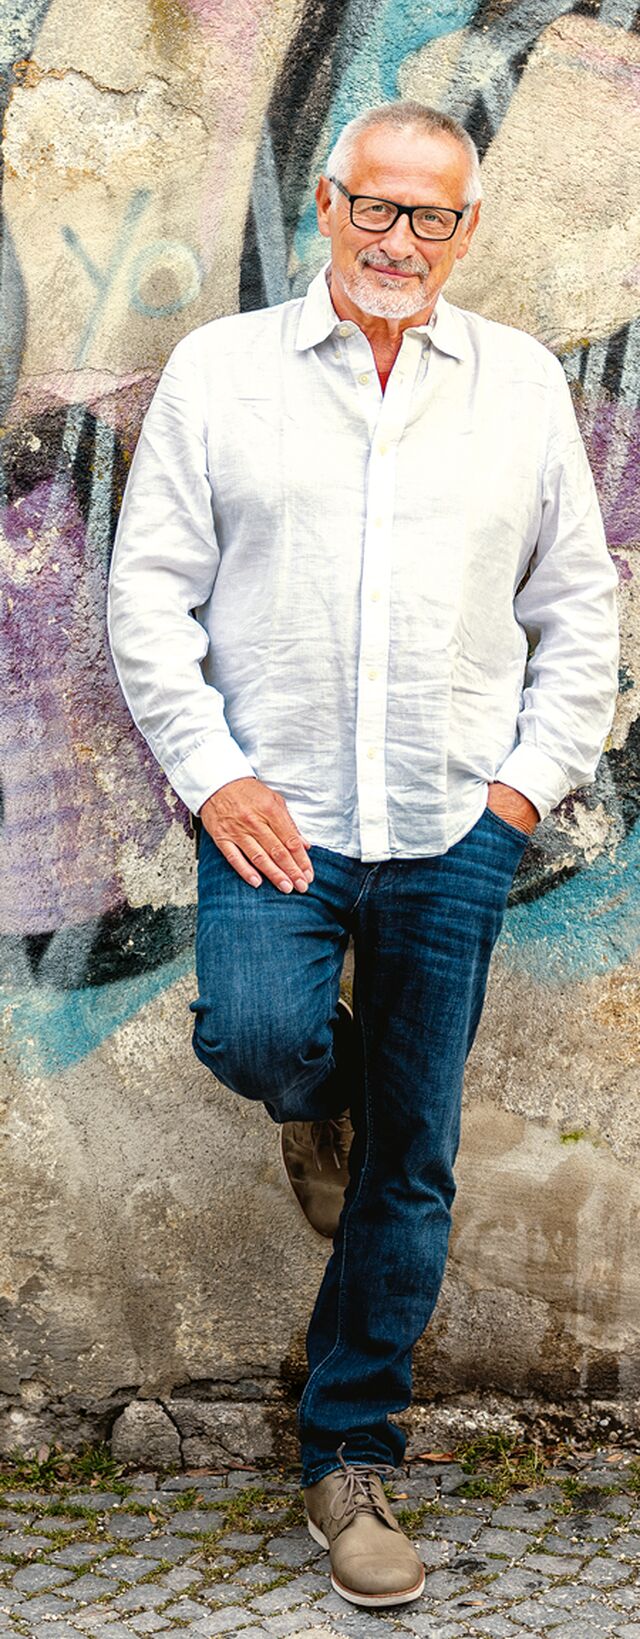 Konstantin Wecker steht in Blue Jeans und weißem Hemd an eine bunte Wand angelehnt. Sein Haar ist weiß, die Brille groß und schwarz.